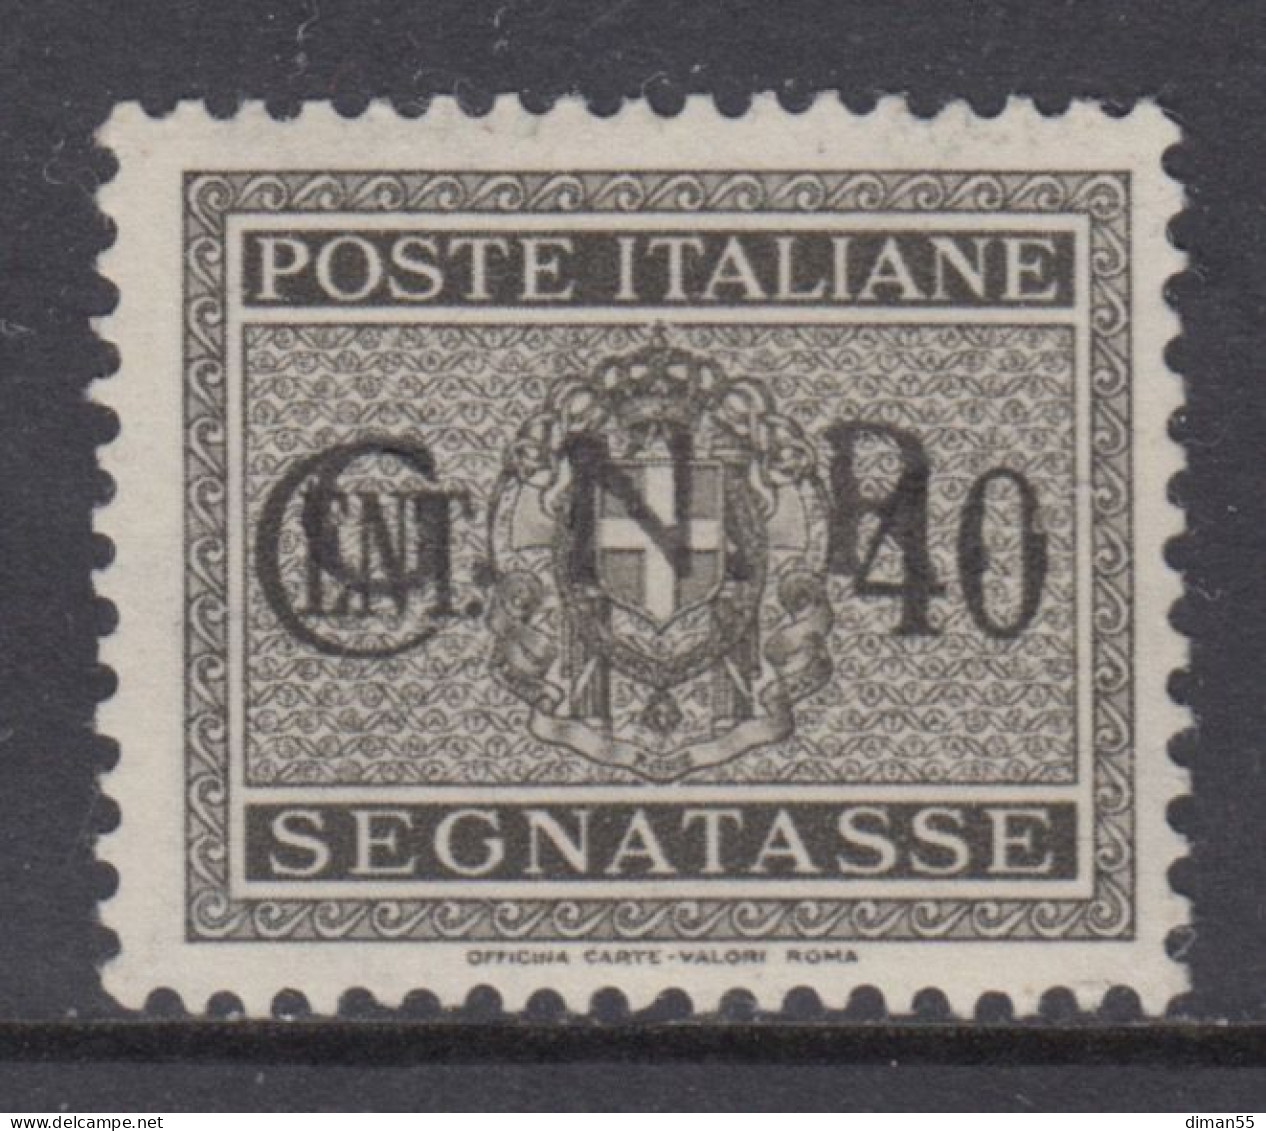 ITALY - 1943 R.S.I. - Tax 52A Cv 1500 Euro - Firmato Oliva - Varietà SOPRASTAMPA NERA Anzichè ROSSA - Taxe